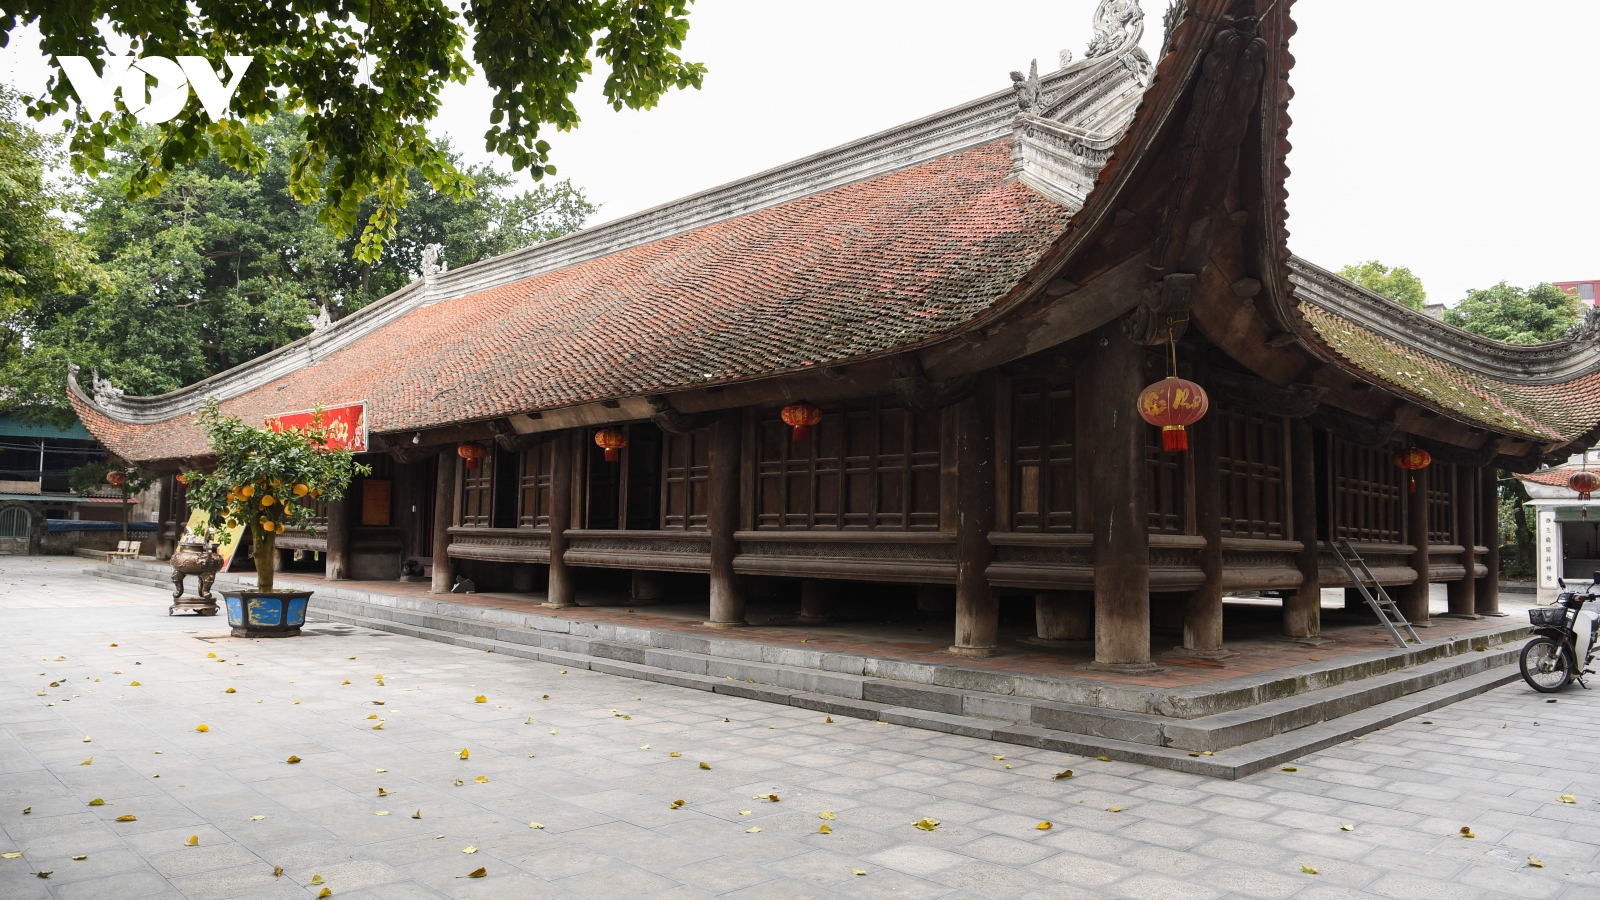 Đình làng Đình Bảng - tuyệt tác kiến trúc cổ gần 300 năm ở Kinh Bắc